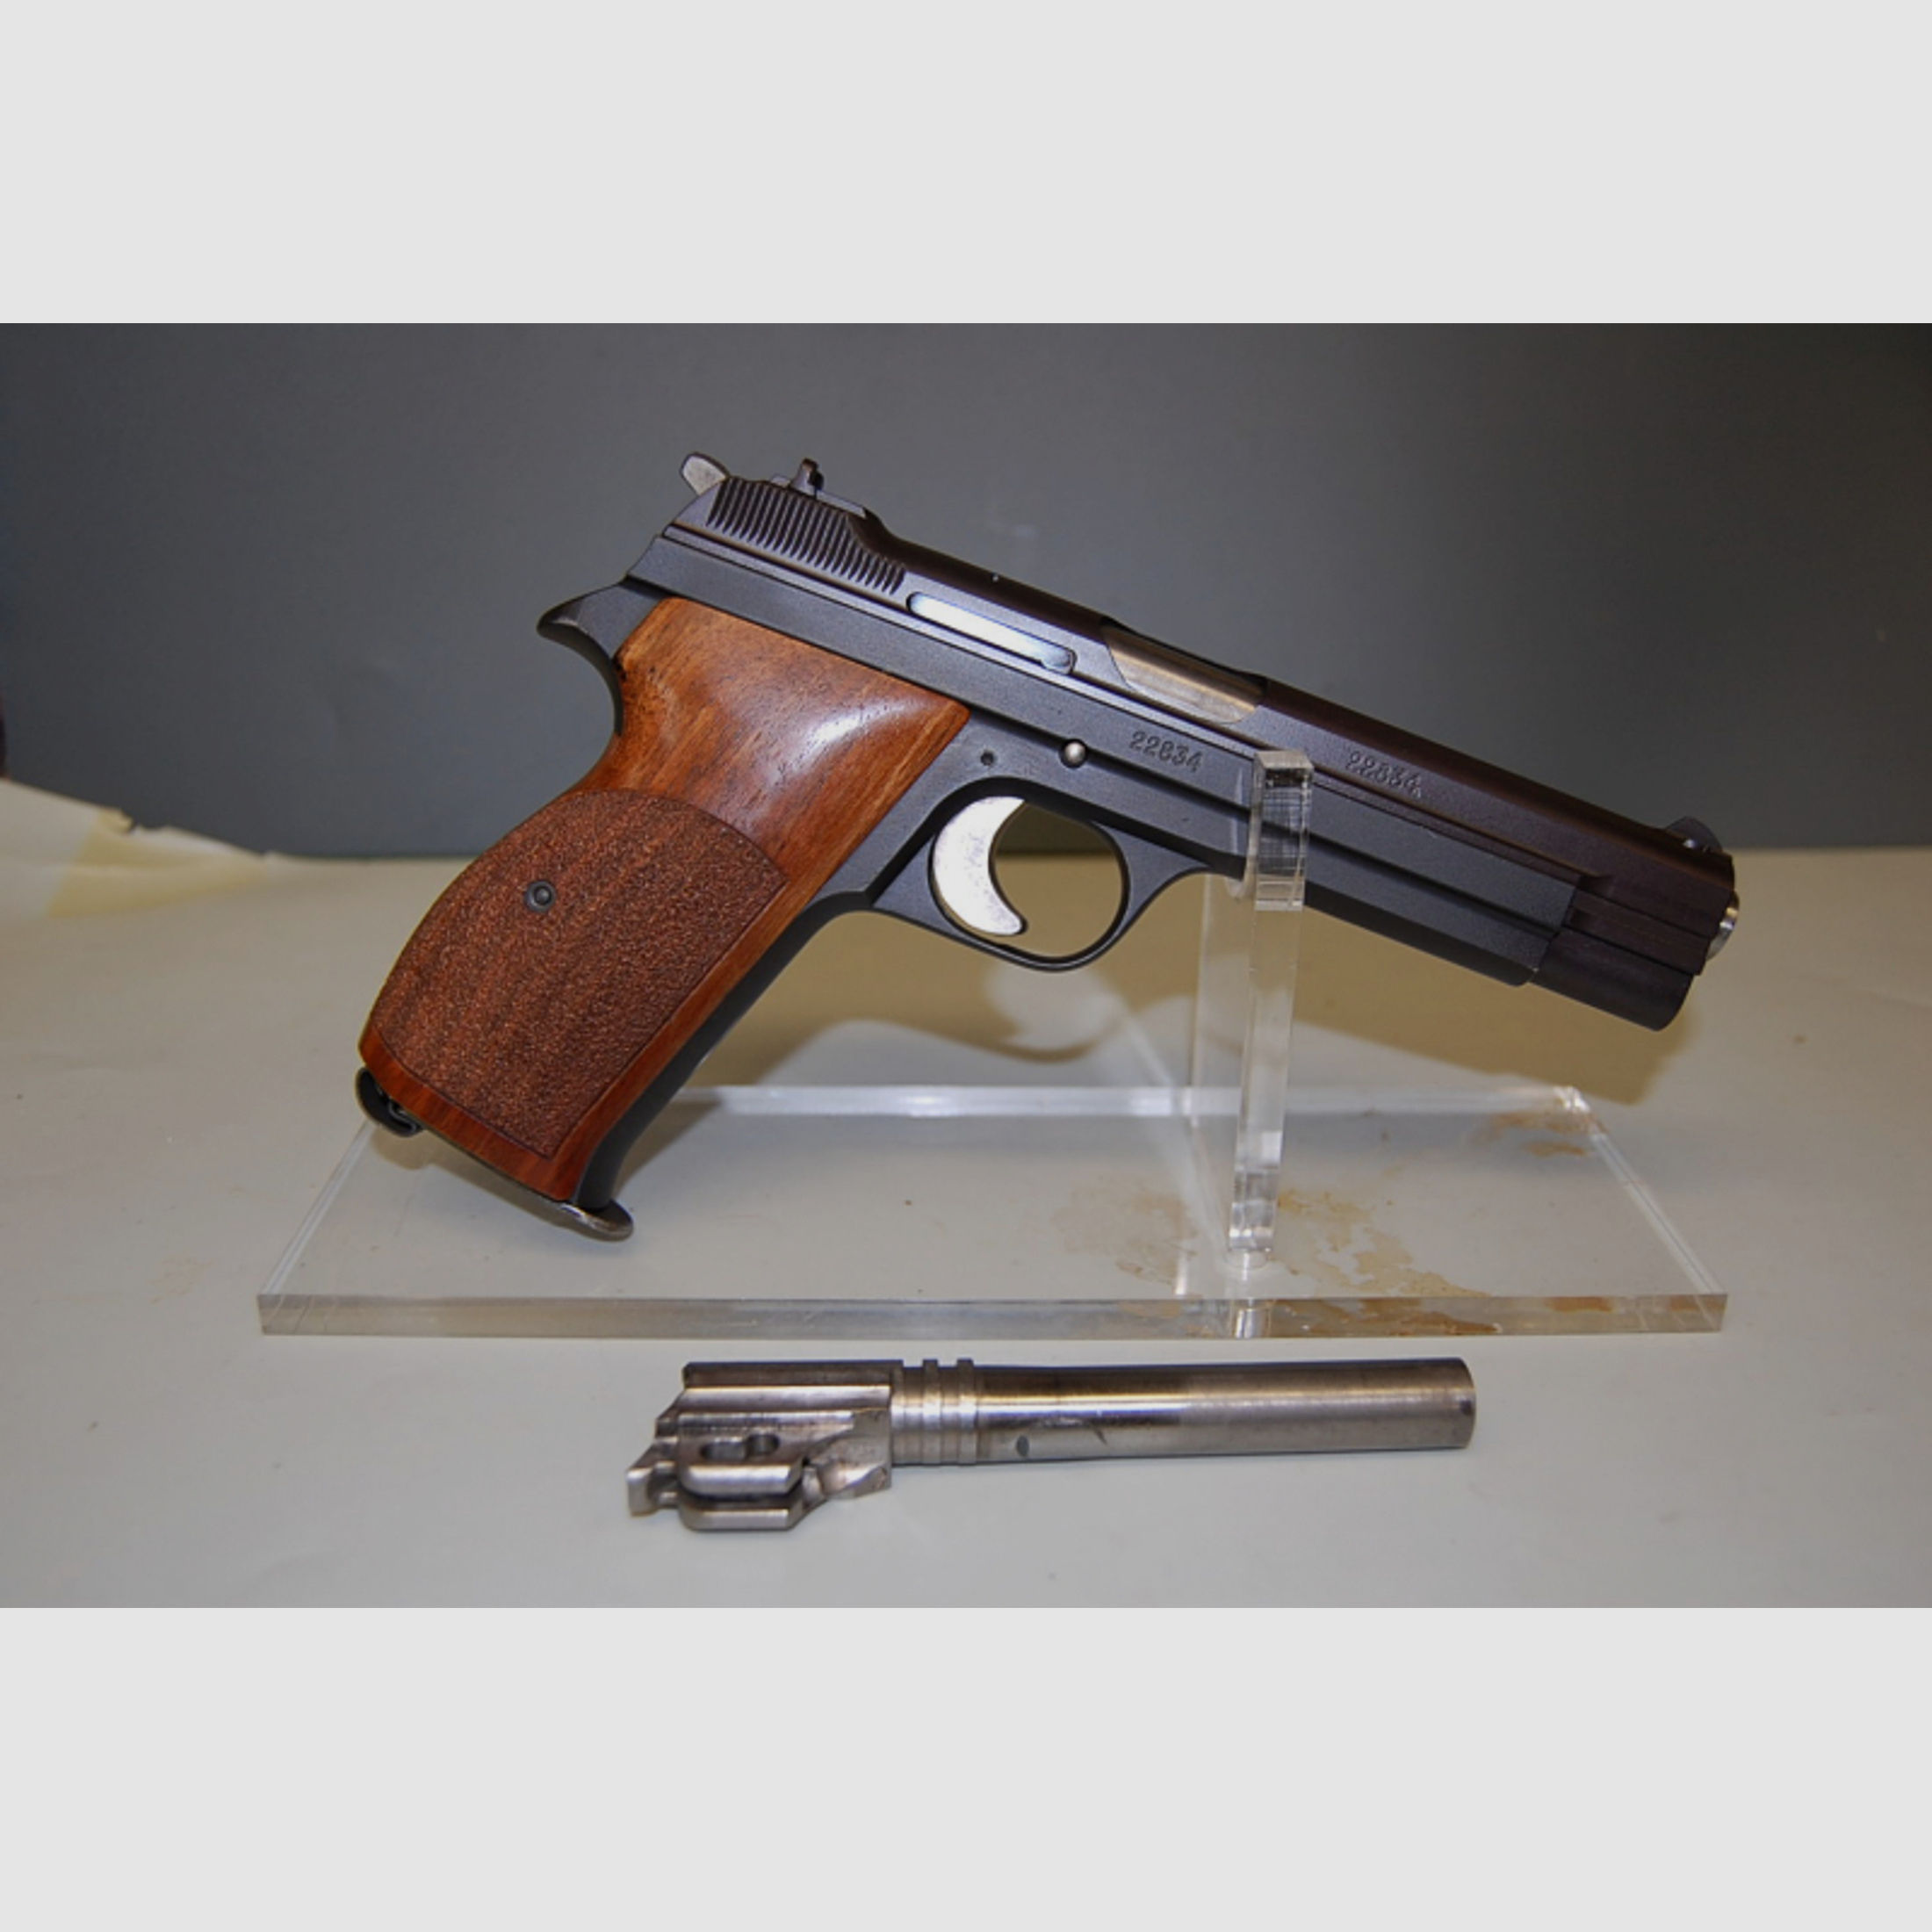 Pistole SIG P210-DK M/49 Kal 9mm Luger wie neu vom Sammler